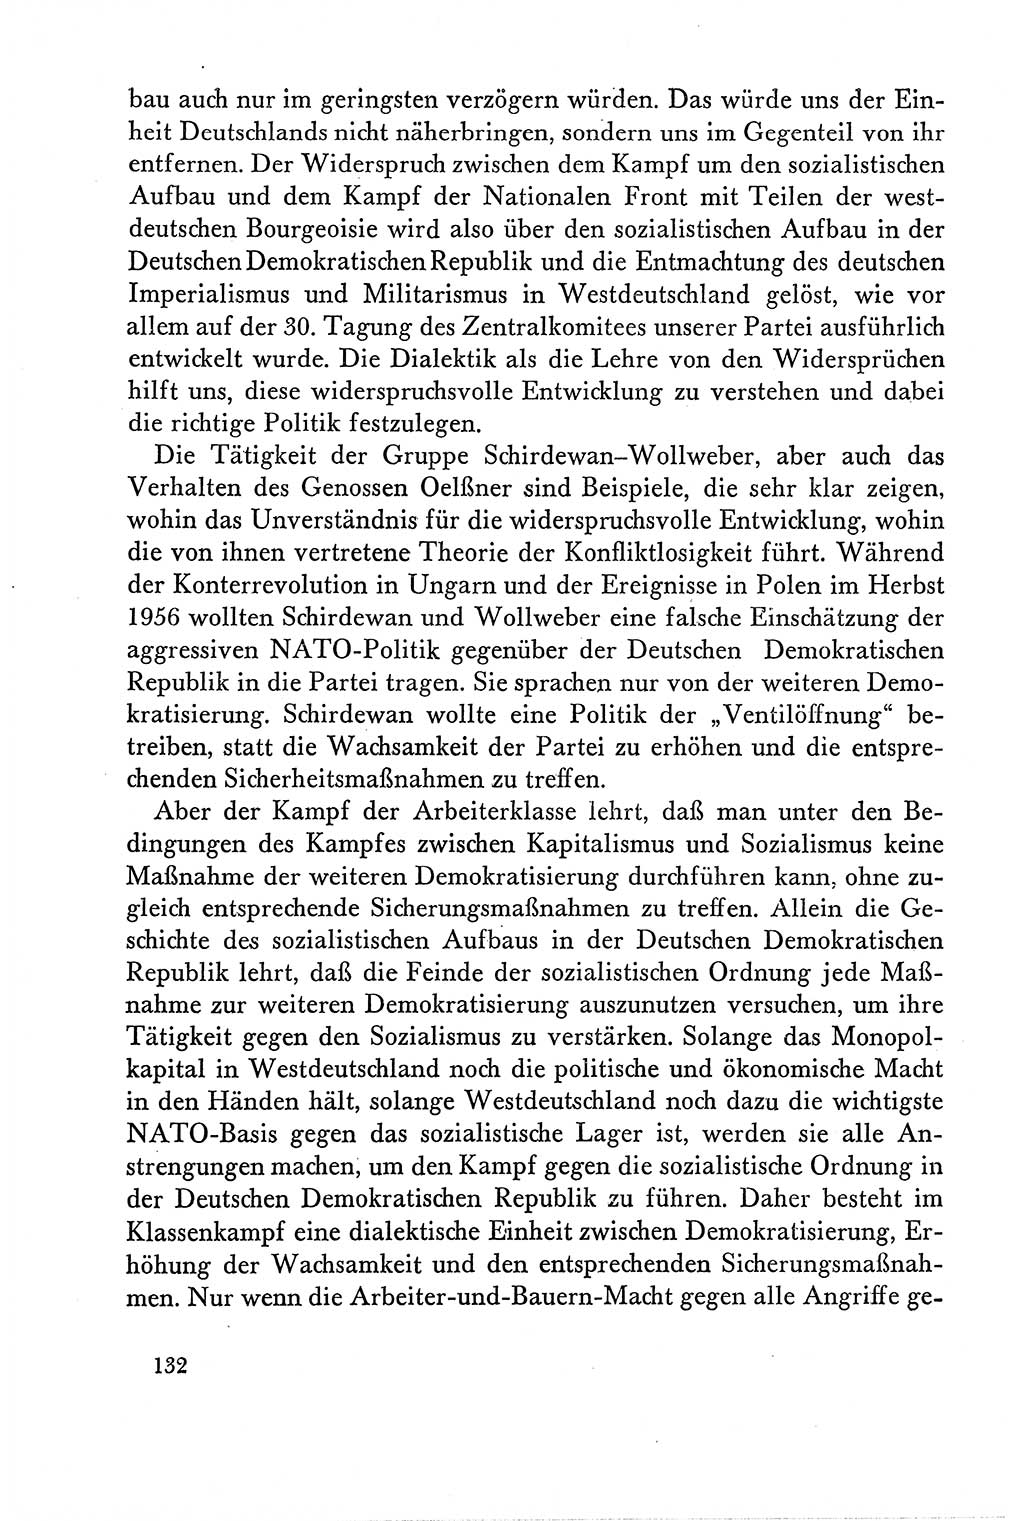 Dokumente der Sozialistischen Einheitspartei Deutschlands (SED) [Deutsche Demokratische Republik (DDR)] 1958-1959, Seite 132 (Dok. SED DDR 1958-1959, S. 132)